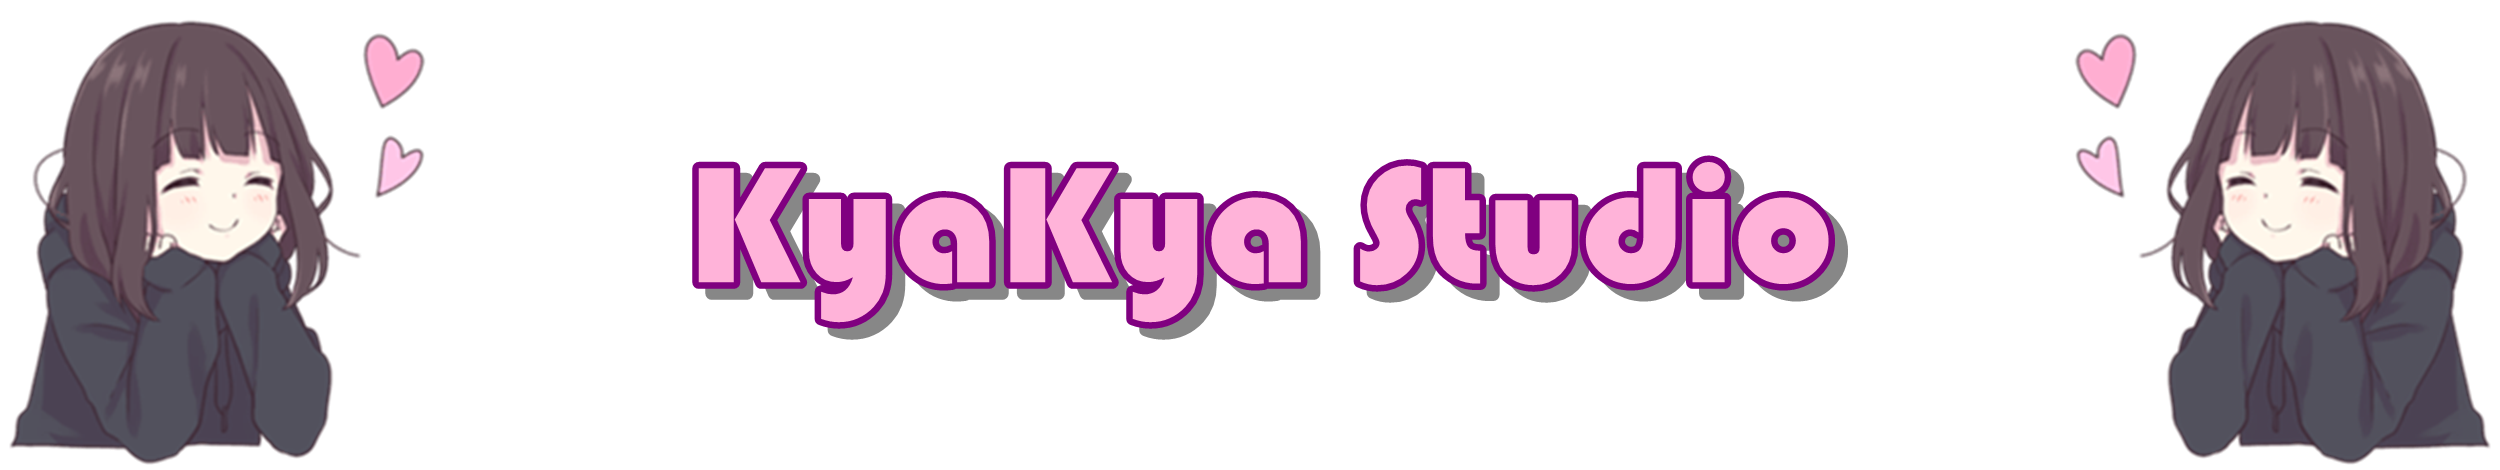 4 kyakya.png